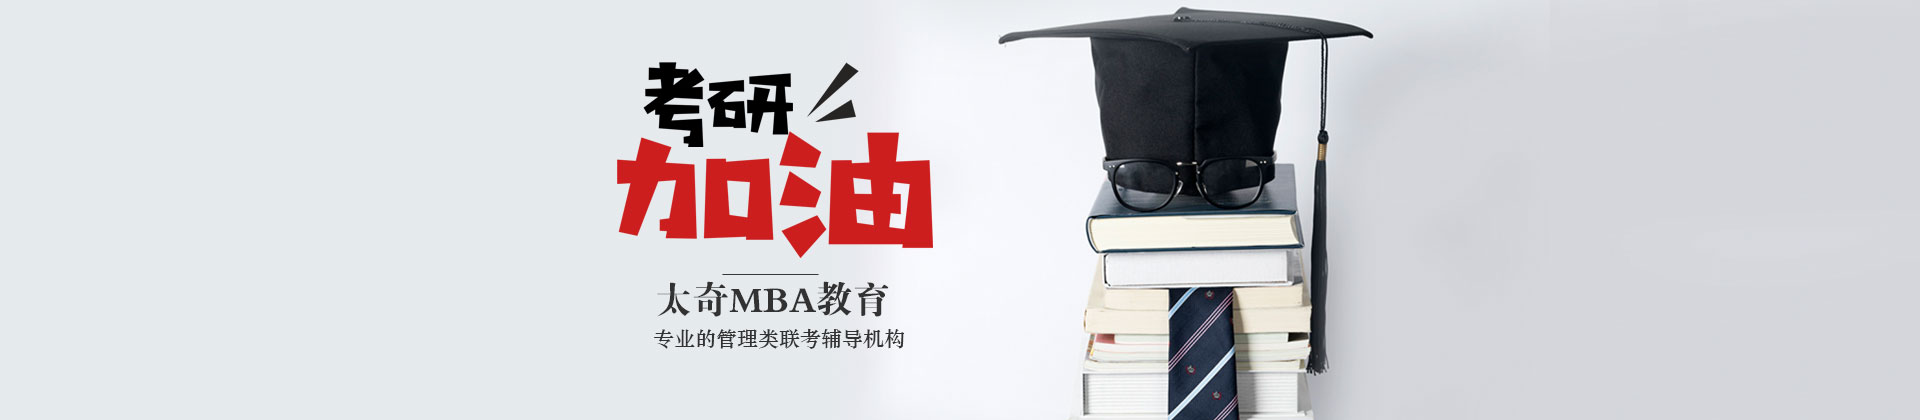 上海太奇MBA教育